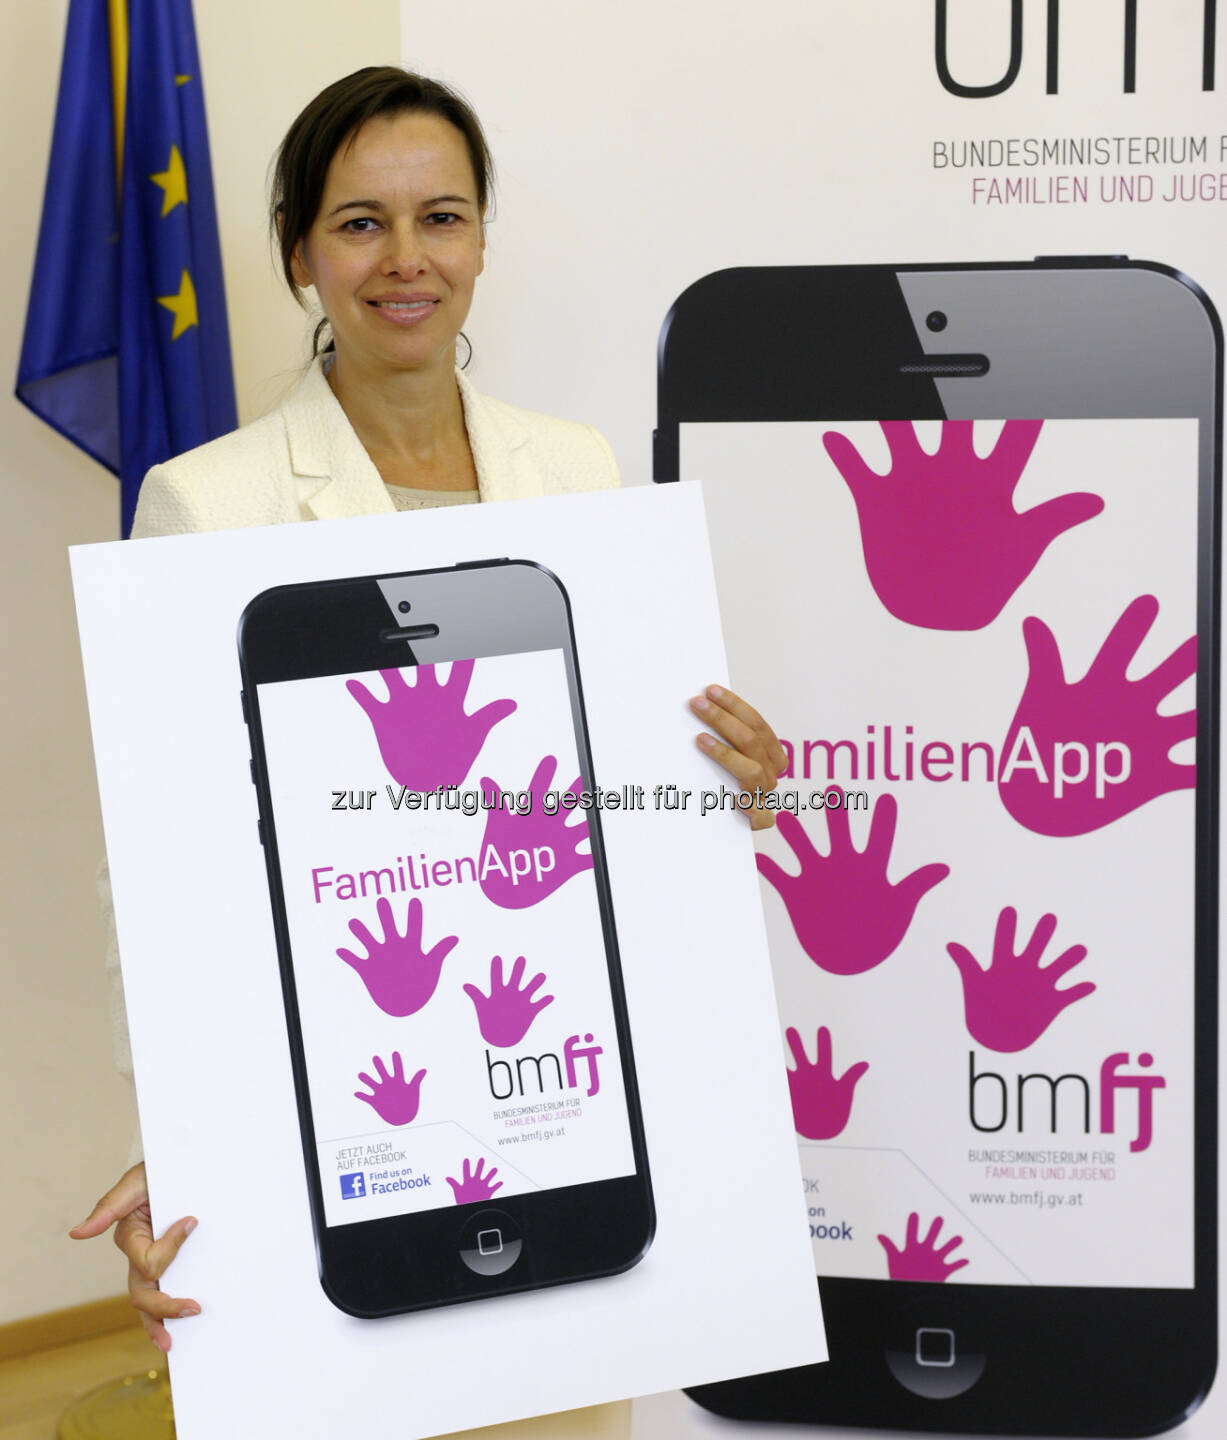 Familienministerin Sophie Karmasin präsentiert die neue FamilienApp des BMFJ: Elternbildung fürs 21. Jahrhundert - die FamilienApp